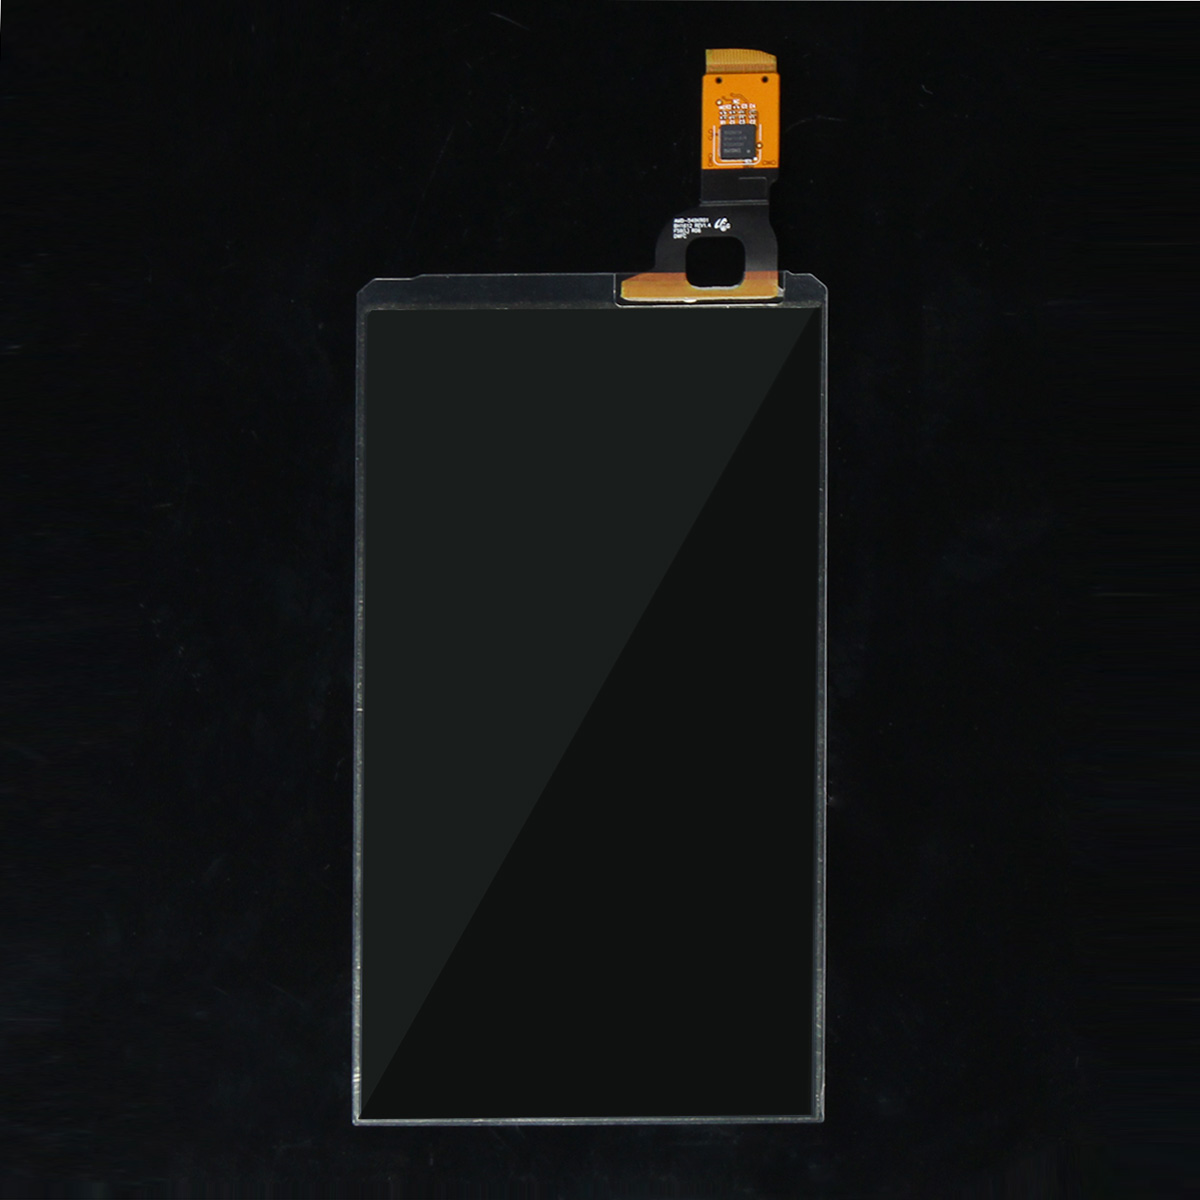 

Сенсорный экран FIG Digitizer Flex Cable + Набор для Samsung Galaxy S7 Edge G935